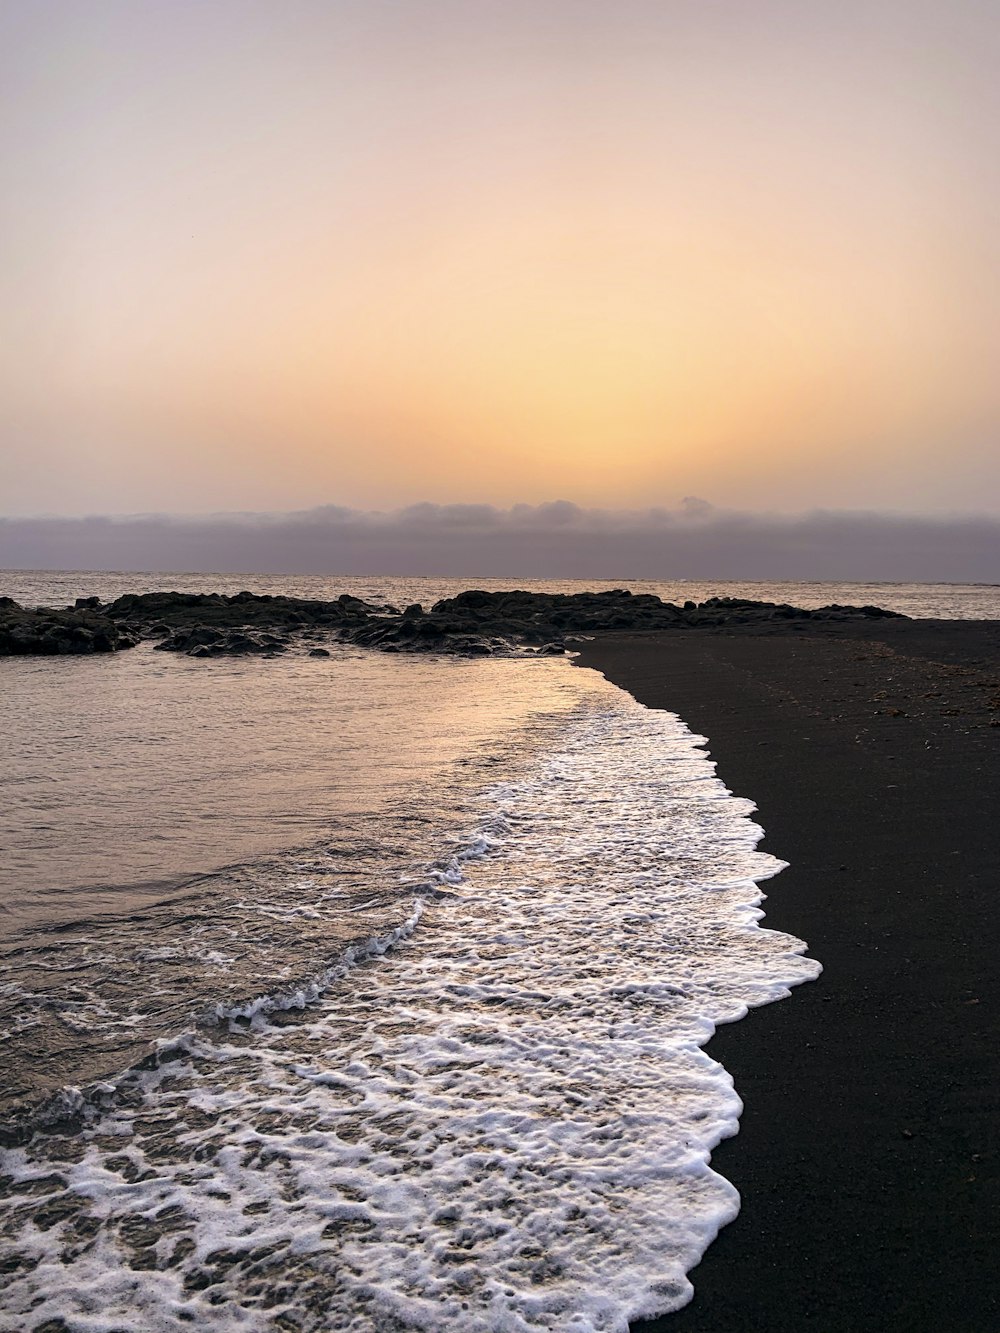 onde dell'oceano che si infrangono sulla riva durante il tramonto